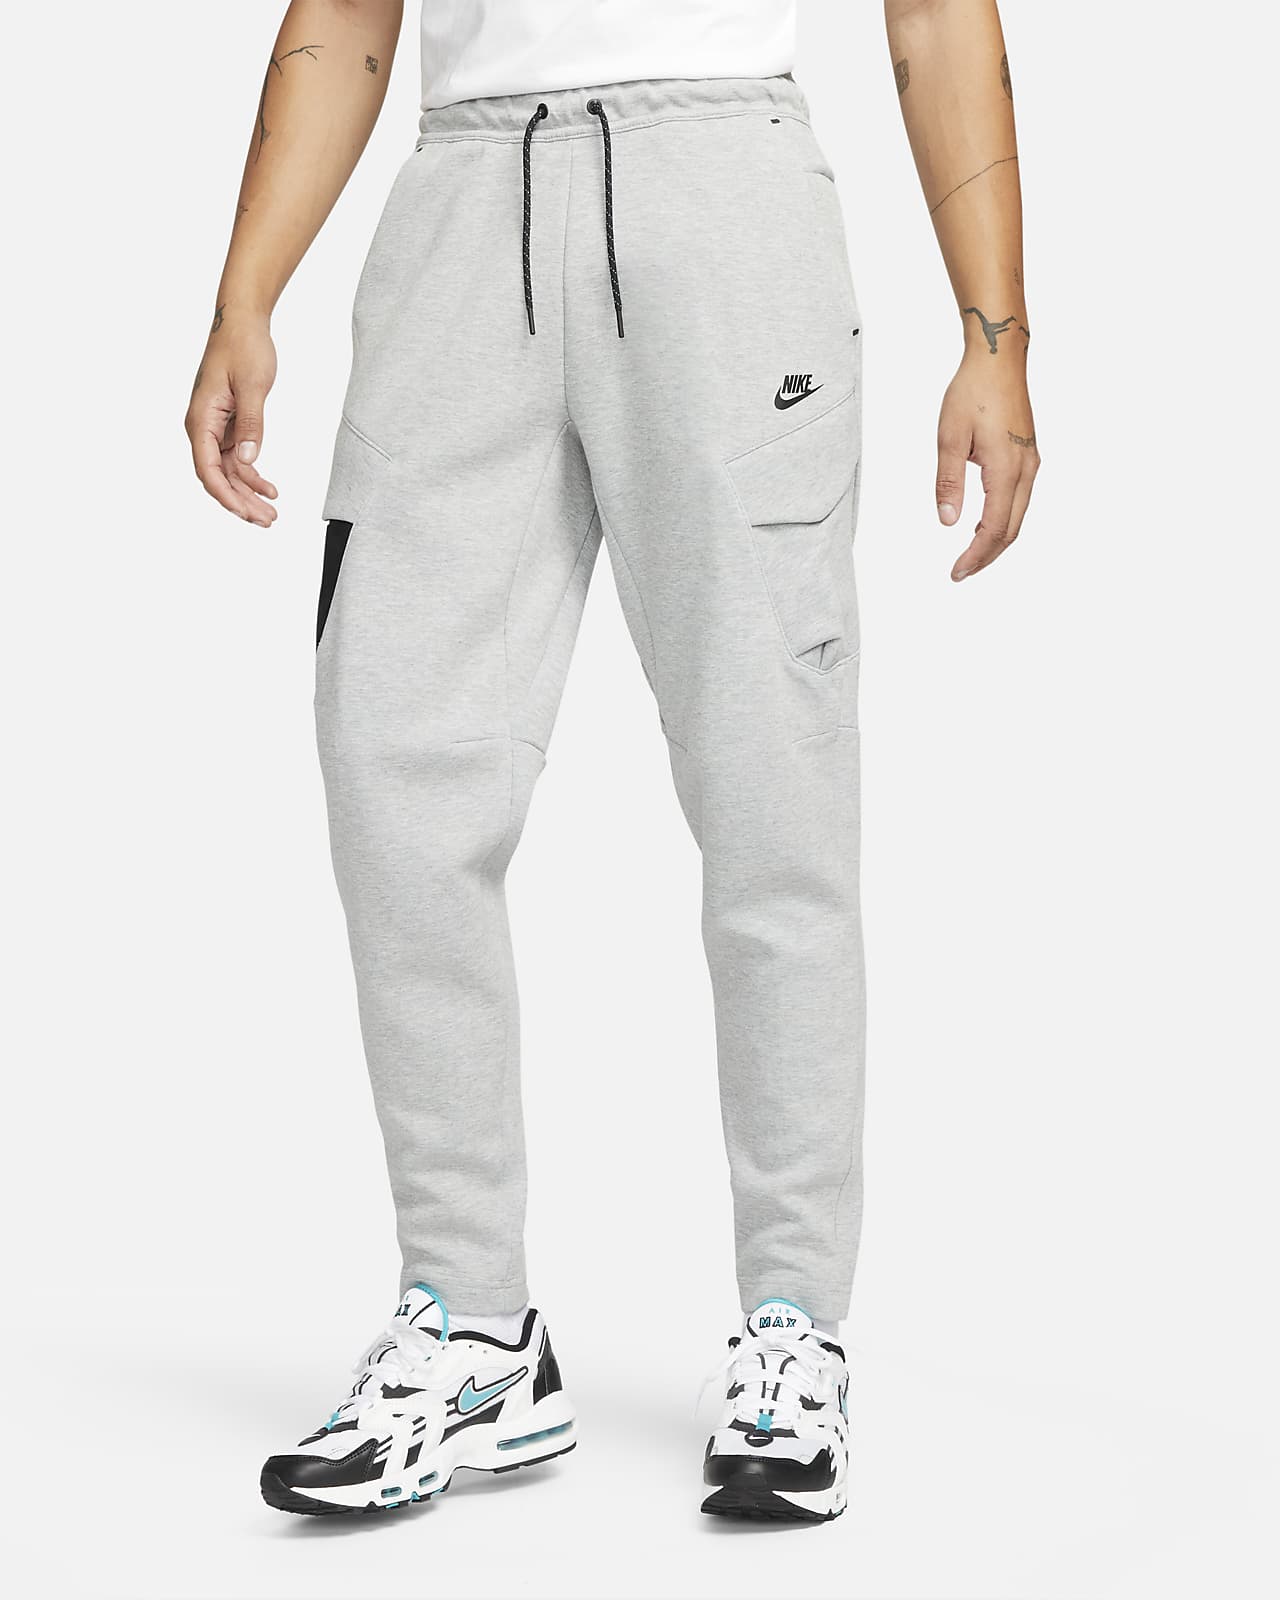 Nike Sportswear Men's Utility Pants.